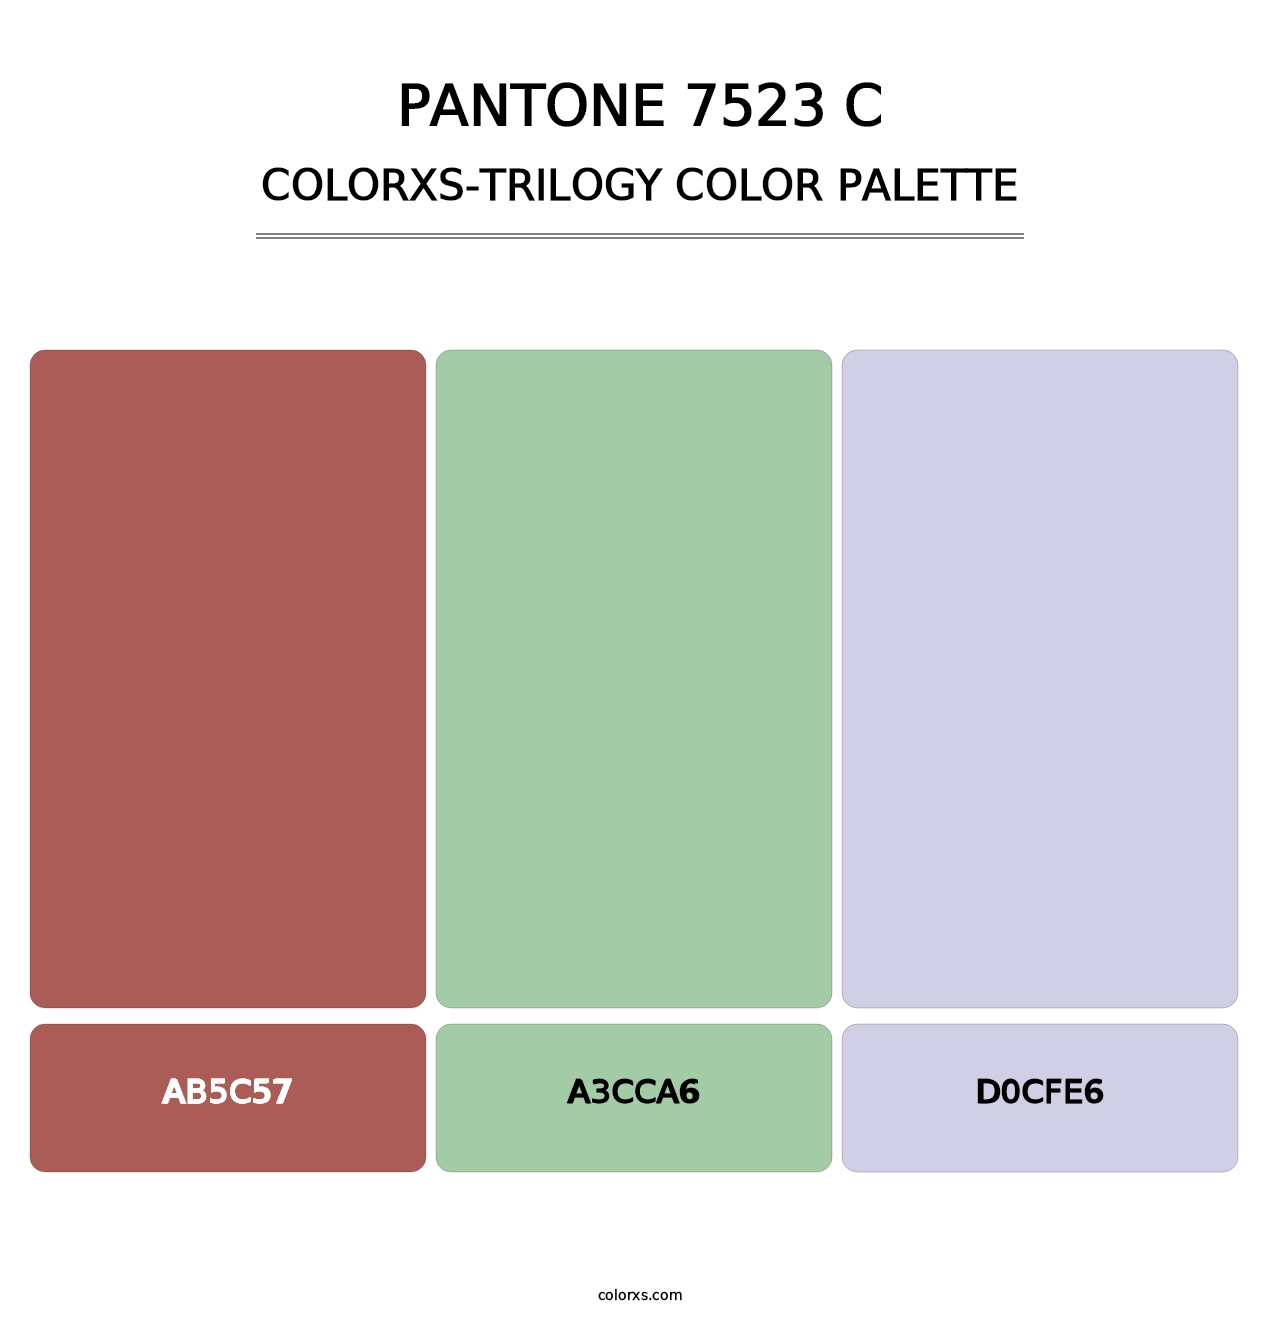 PANTONE 7523 C - Colorxs Trilogy Palette